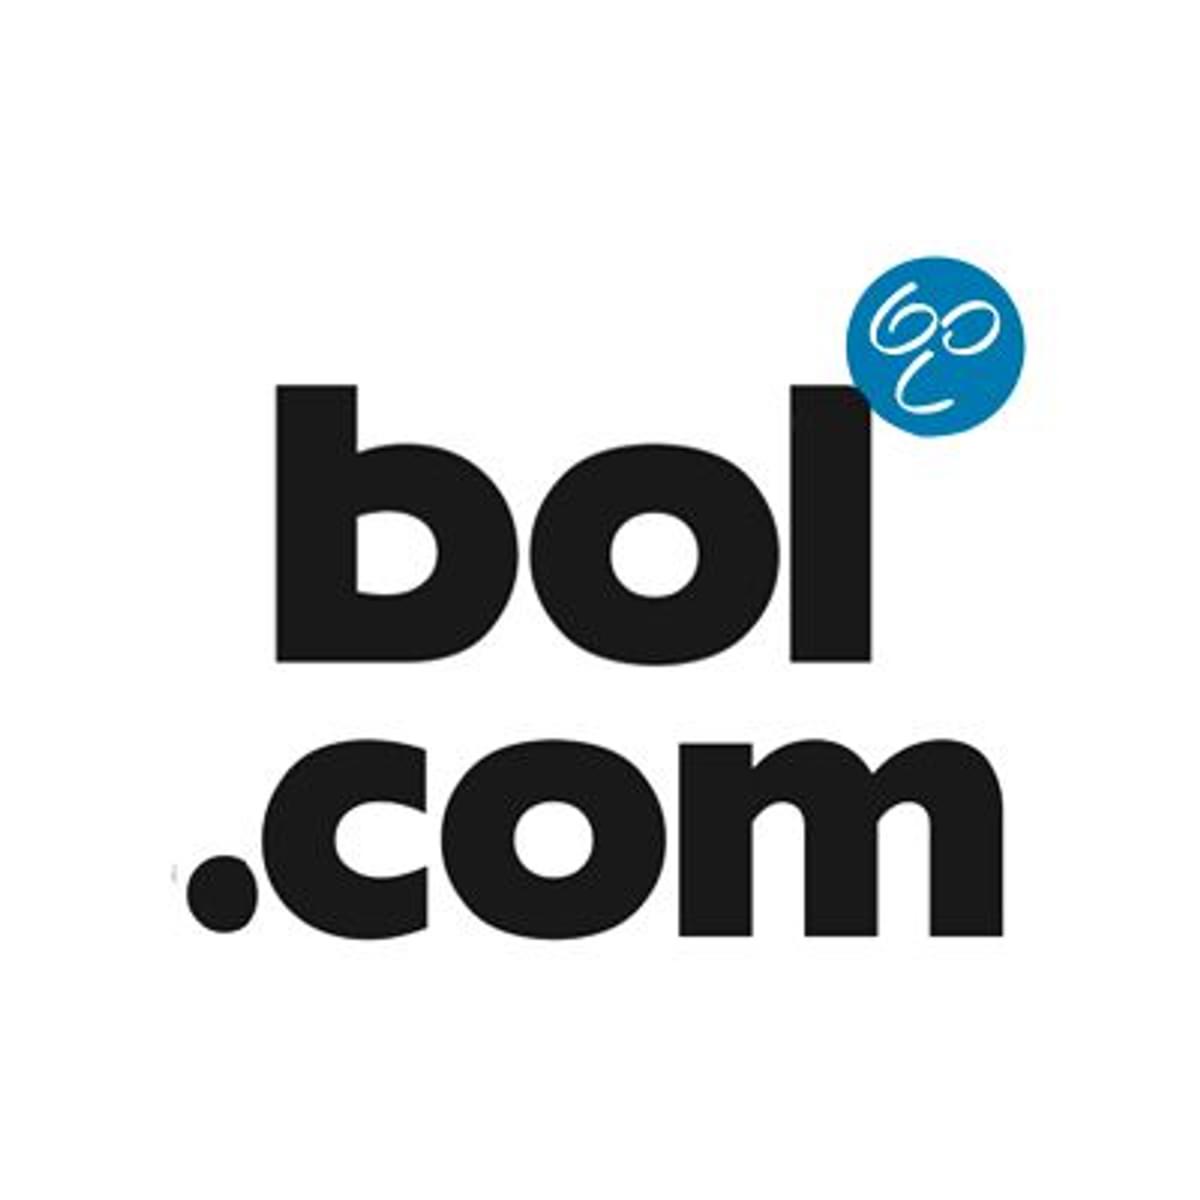 Cycloon en bol.com krijgen goedkeuring voor strategische samenwerking image